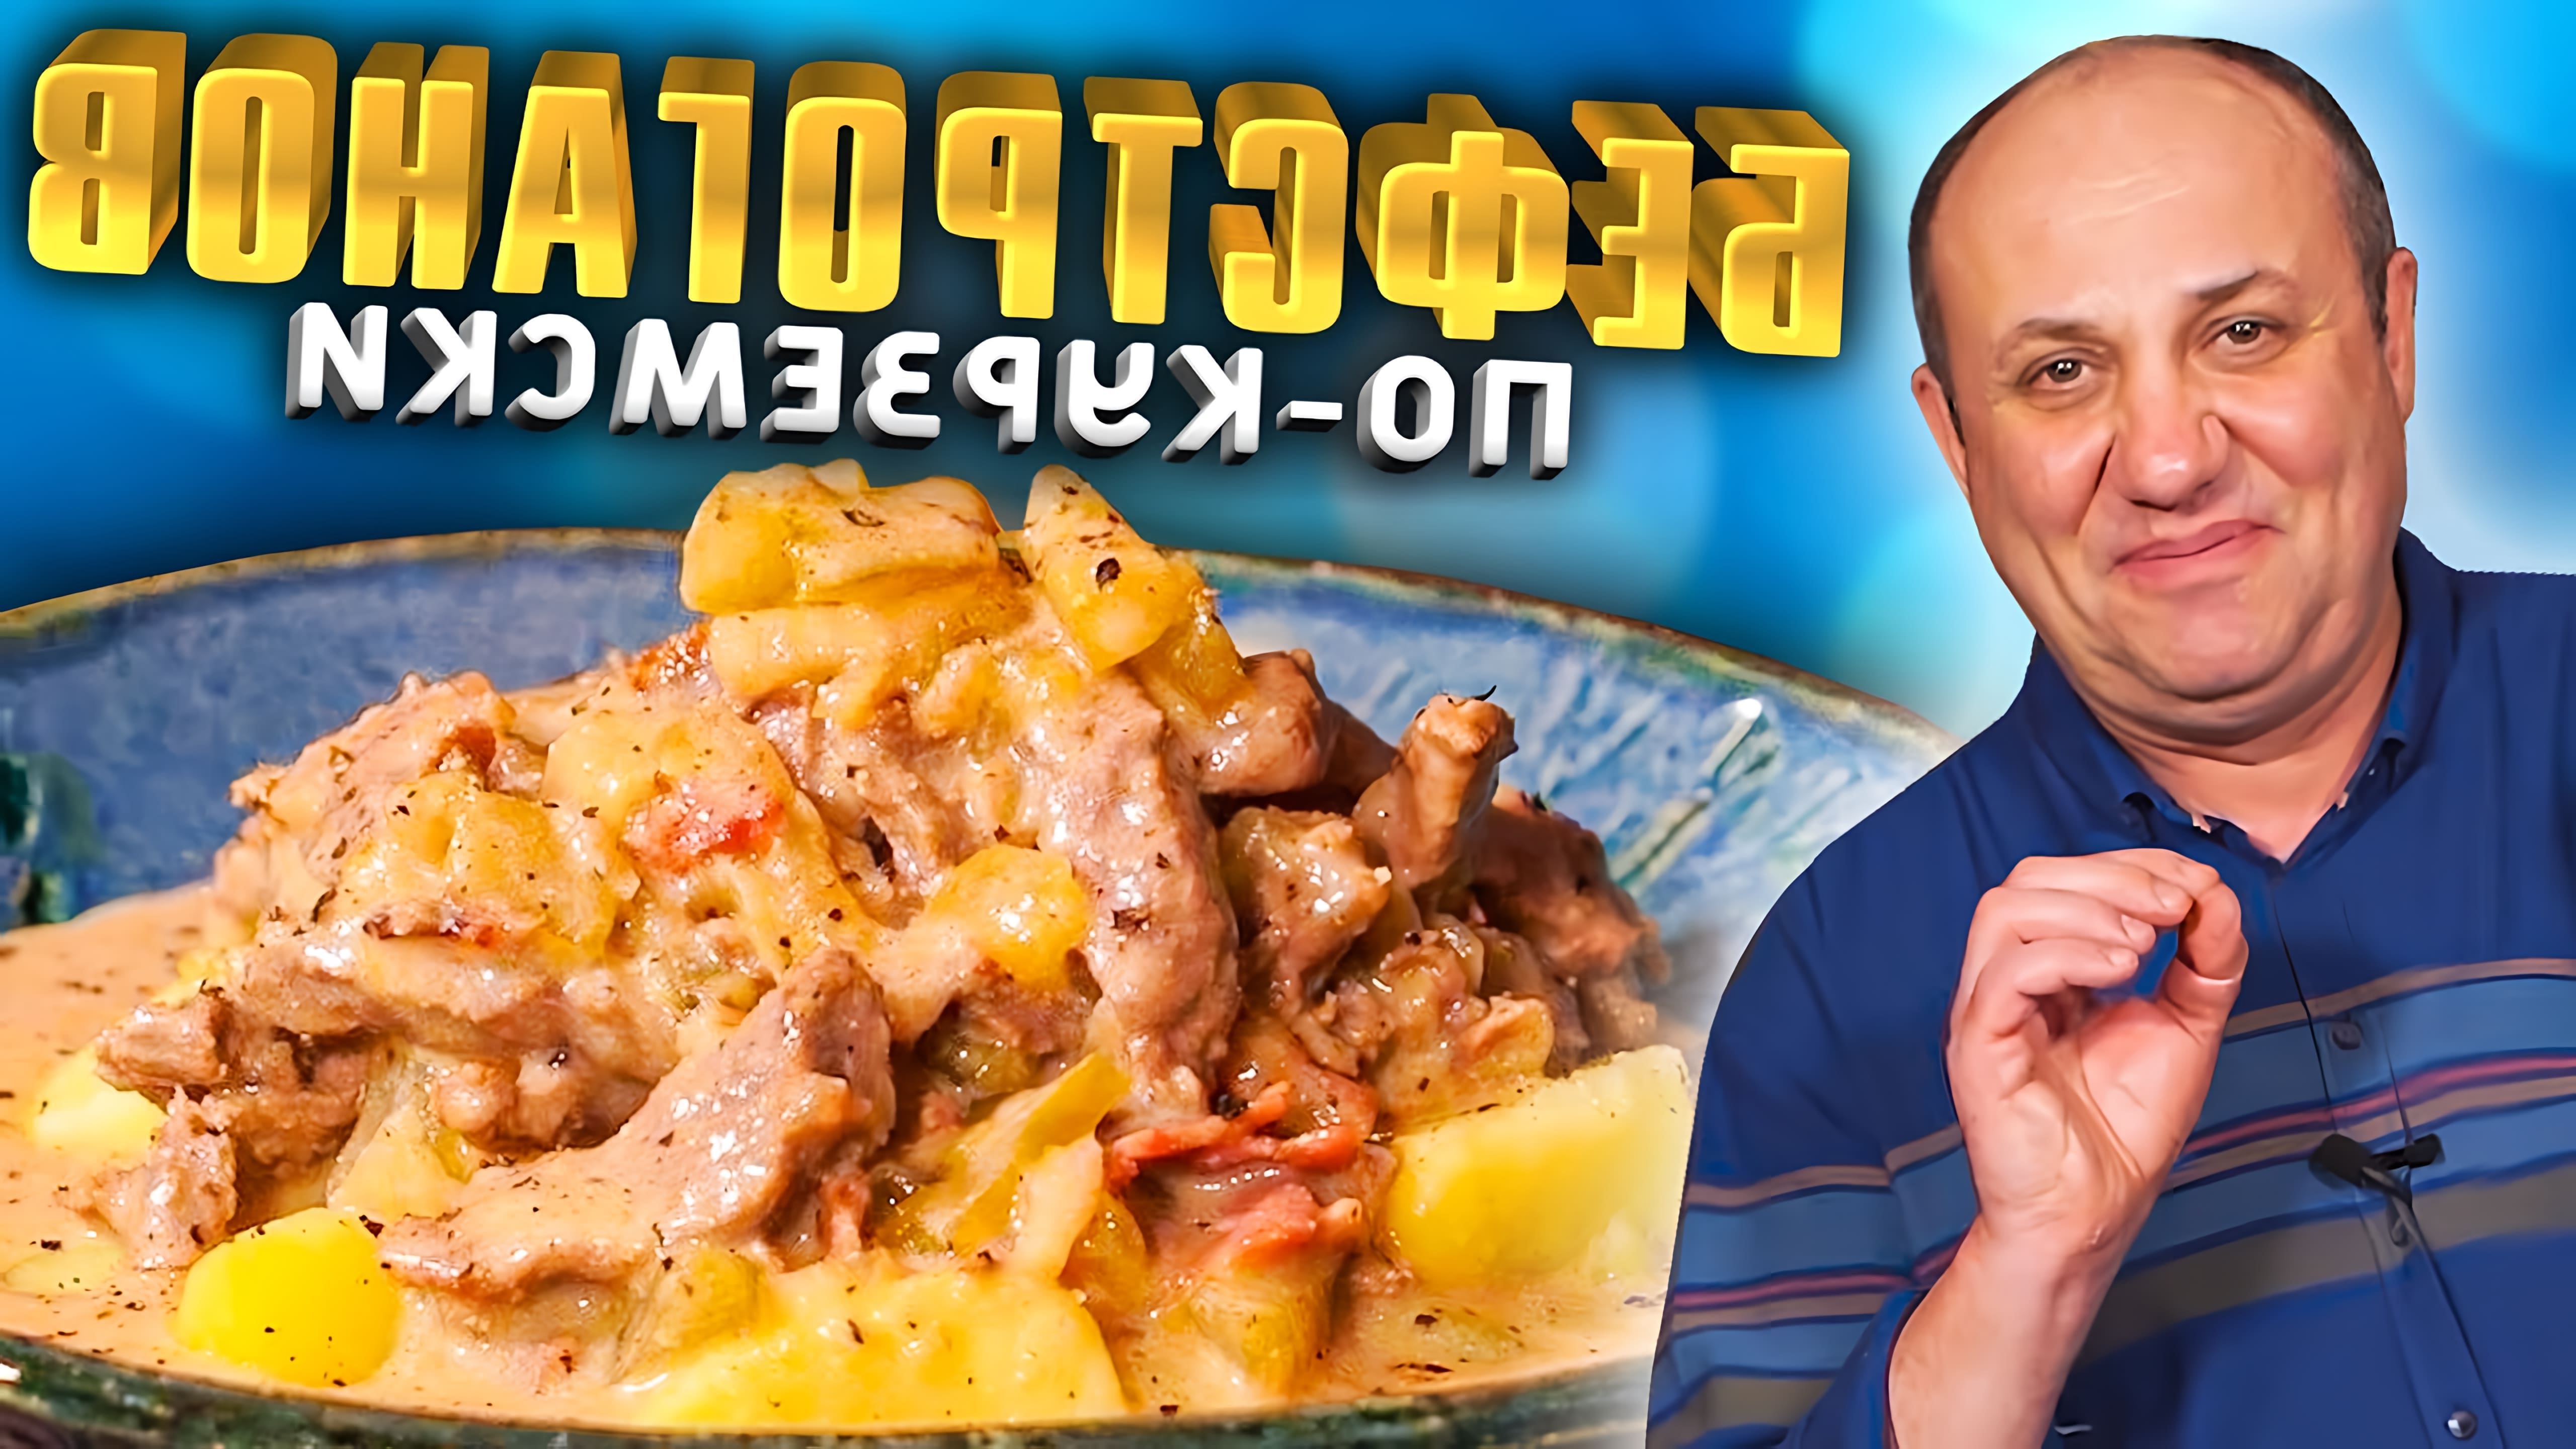 В этом видео шеф-повар показывает, как приготовить бефстроганов по-курземски, используя говядину в сметанном соусе